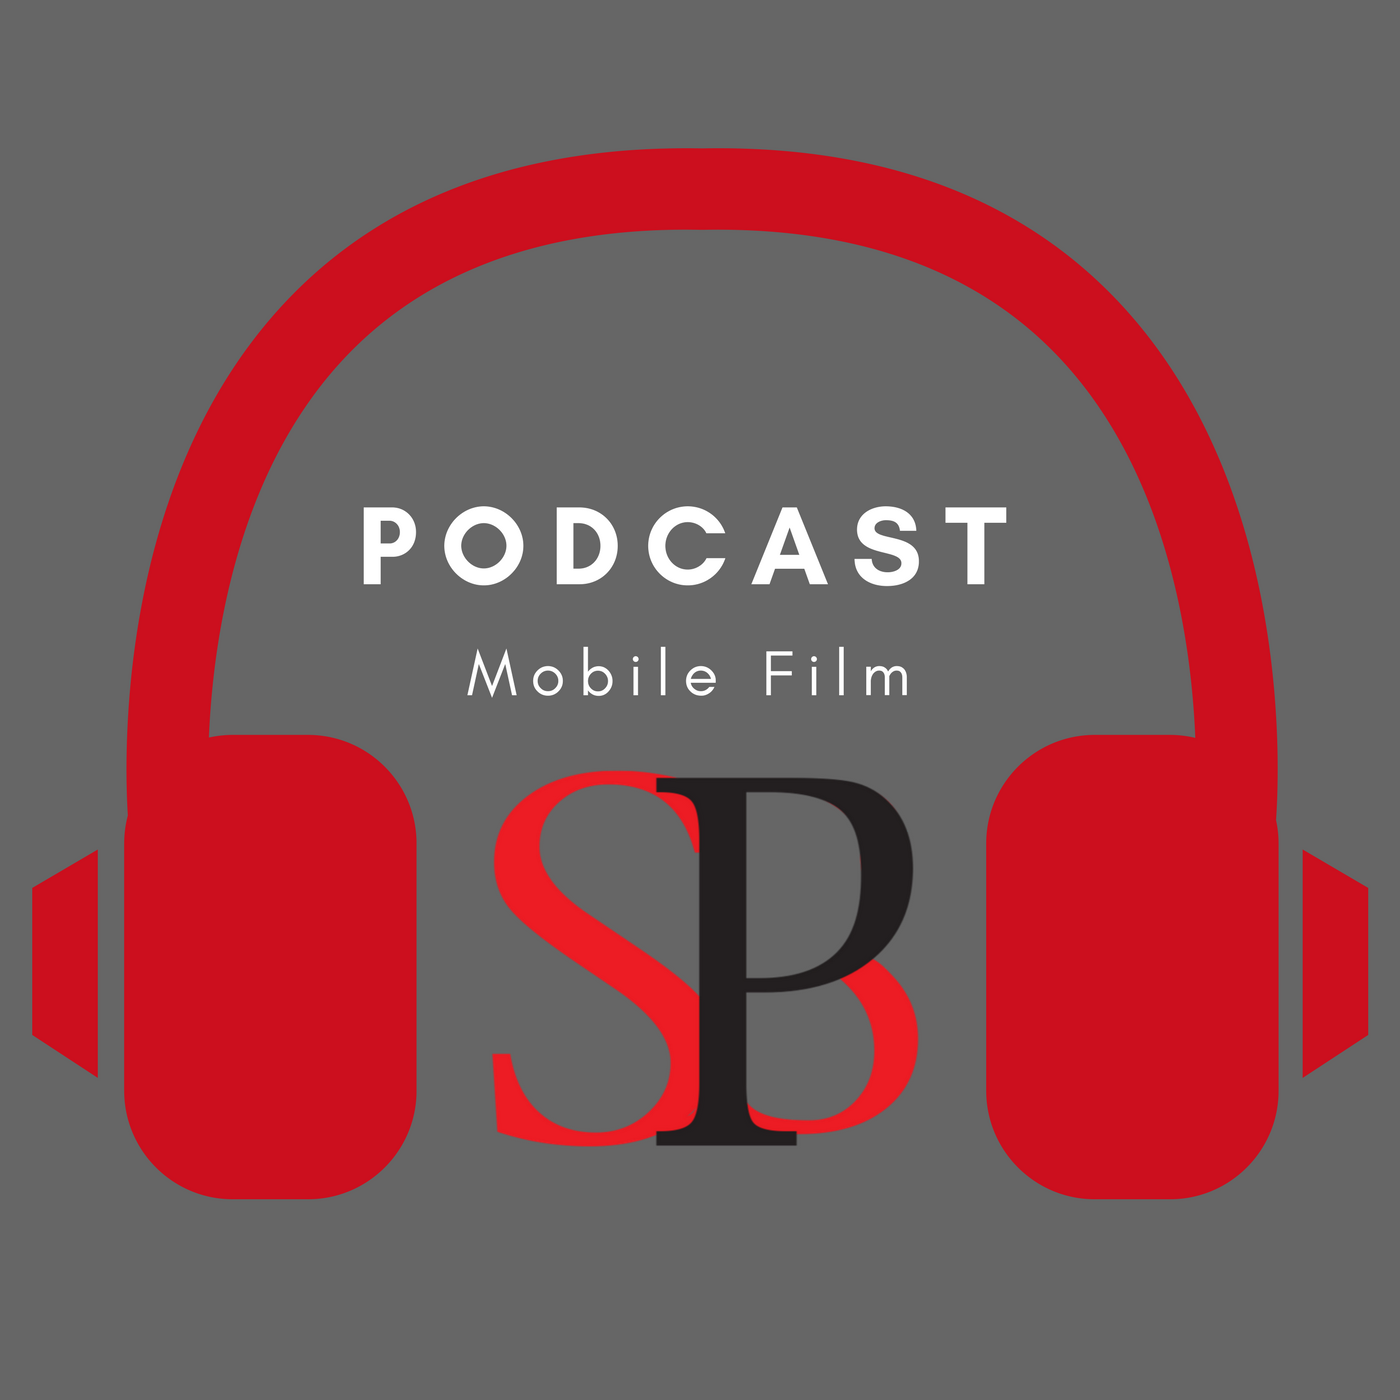 SBP Podcast Mobile Filmmaking Episode 2 Mithran Maharajan Image